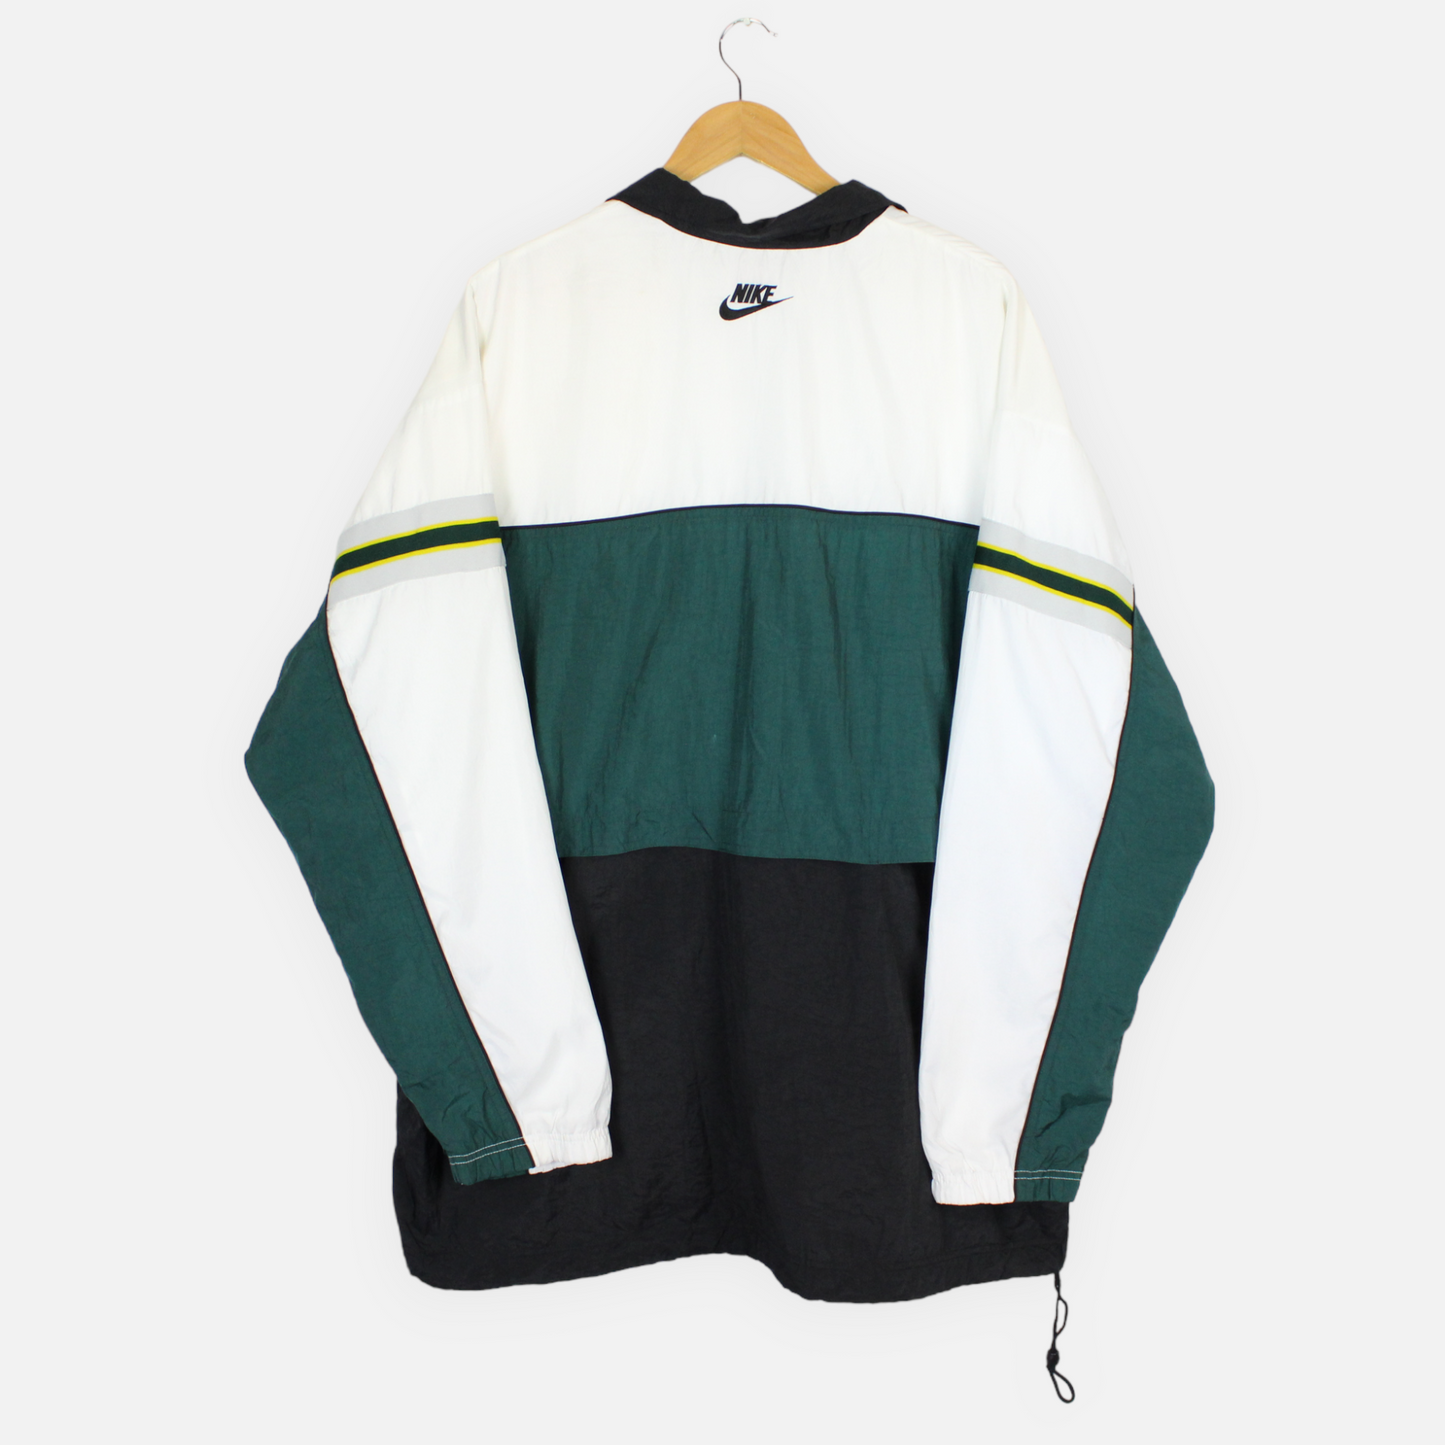 Vintage Nike Colour Block Jacket - XL